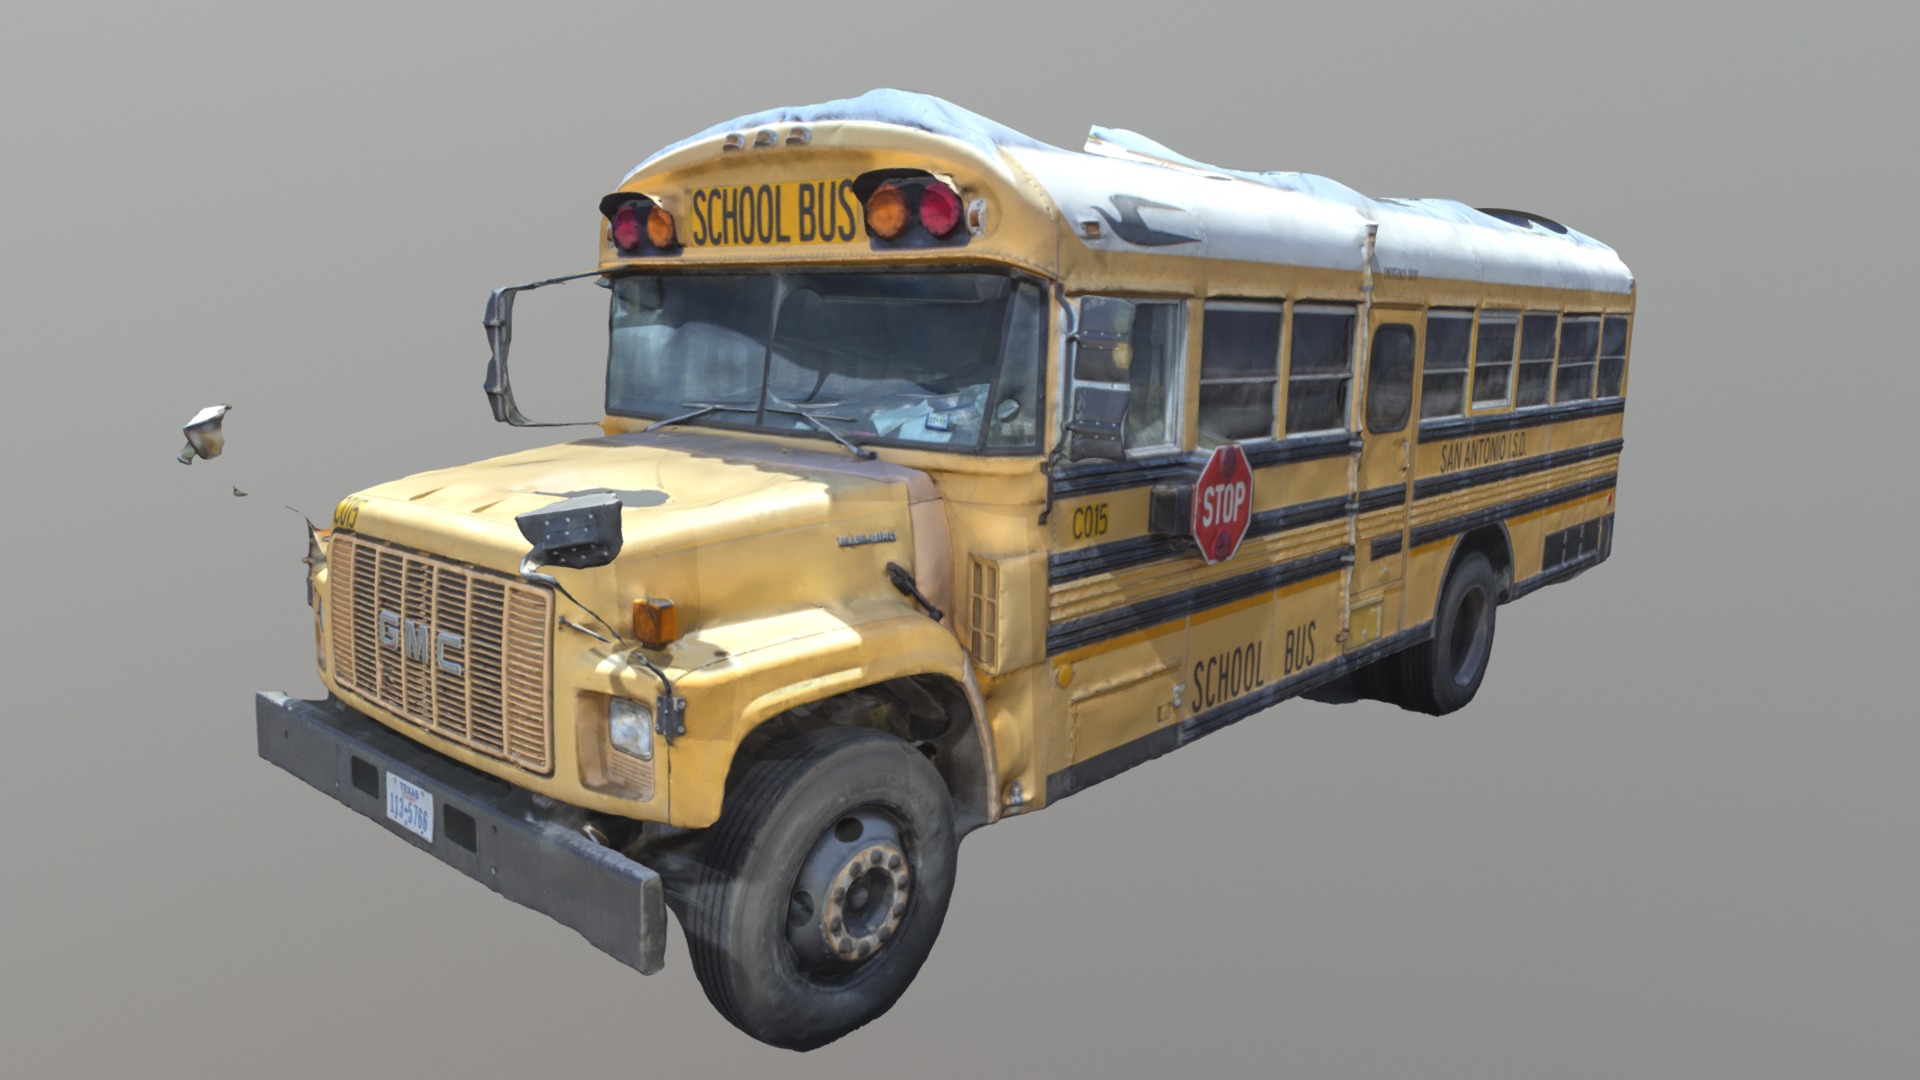 3D model Schoolbus St Antonio - This is a 3D model of the Schoolbus St Antonio. The 3D model is about a school bus parked.